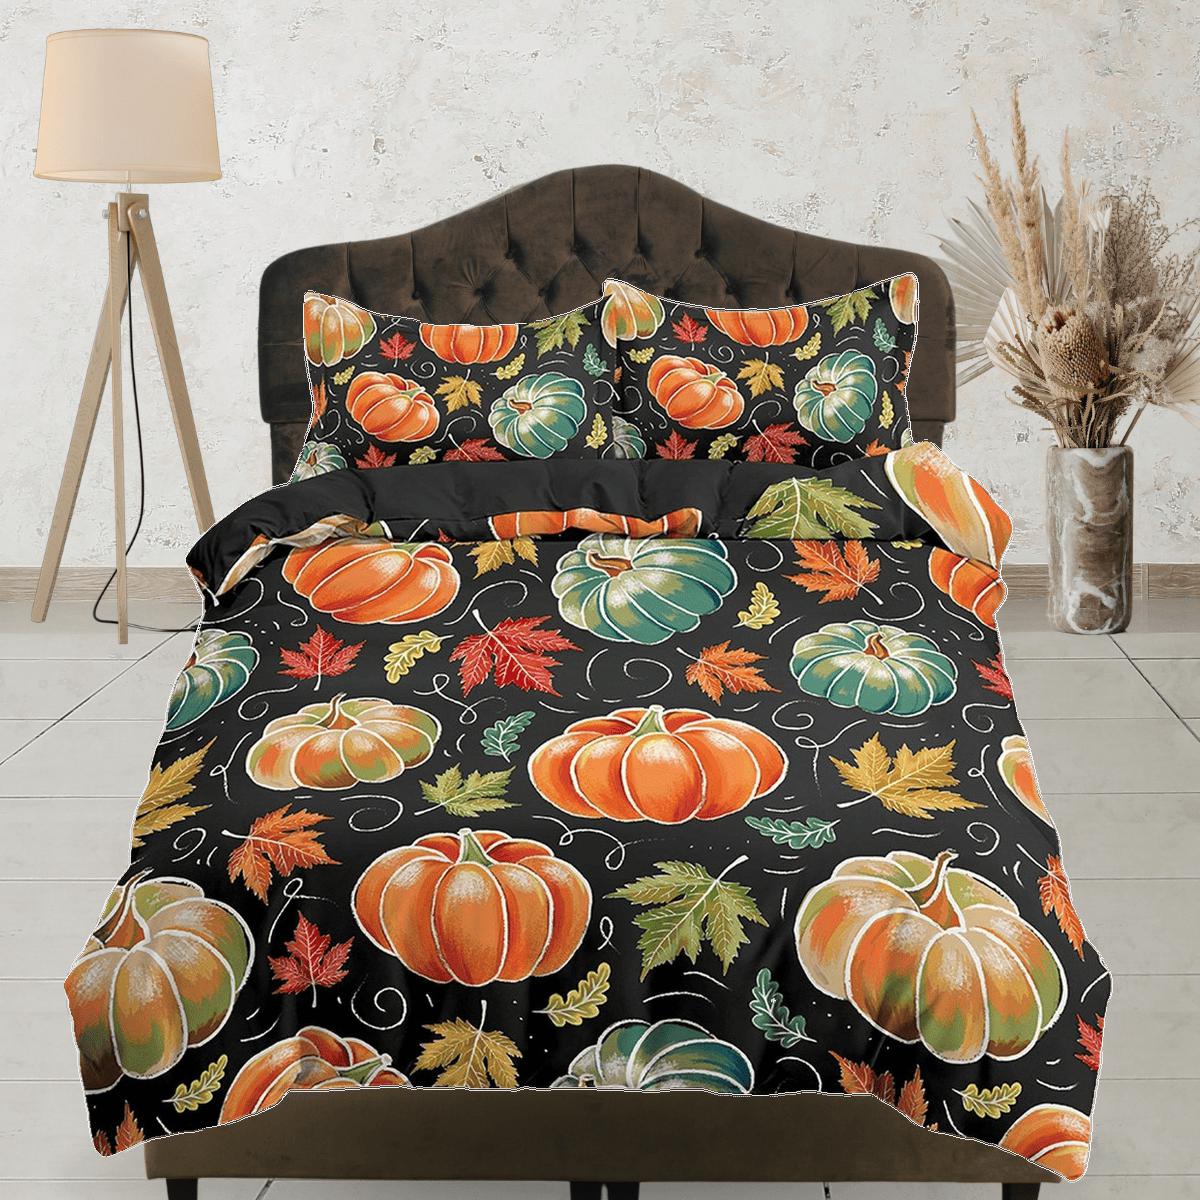 daintyduvet Autumn vintage halloween full size bedding & pillowcase, duvet cover set dorm bedding, halloween decor, shabby chic bedding, halloween gift